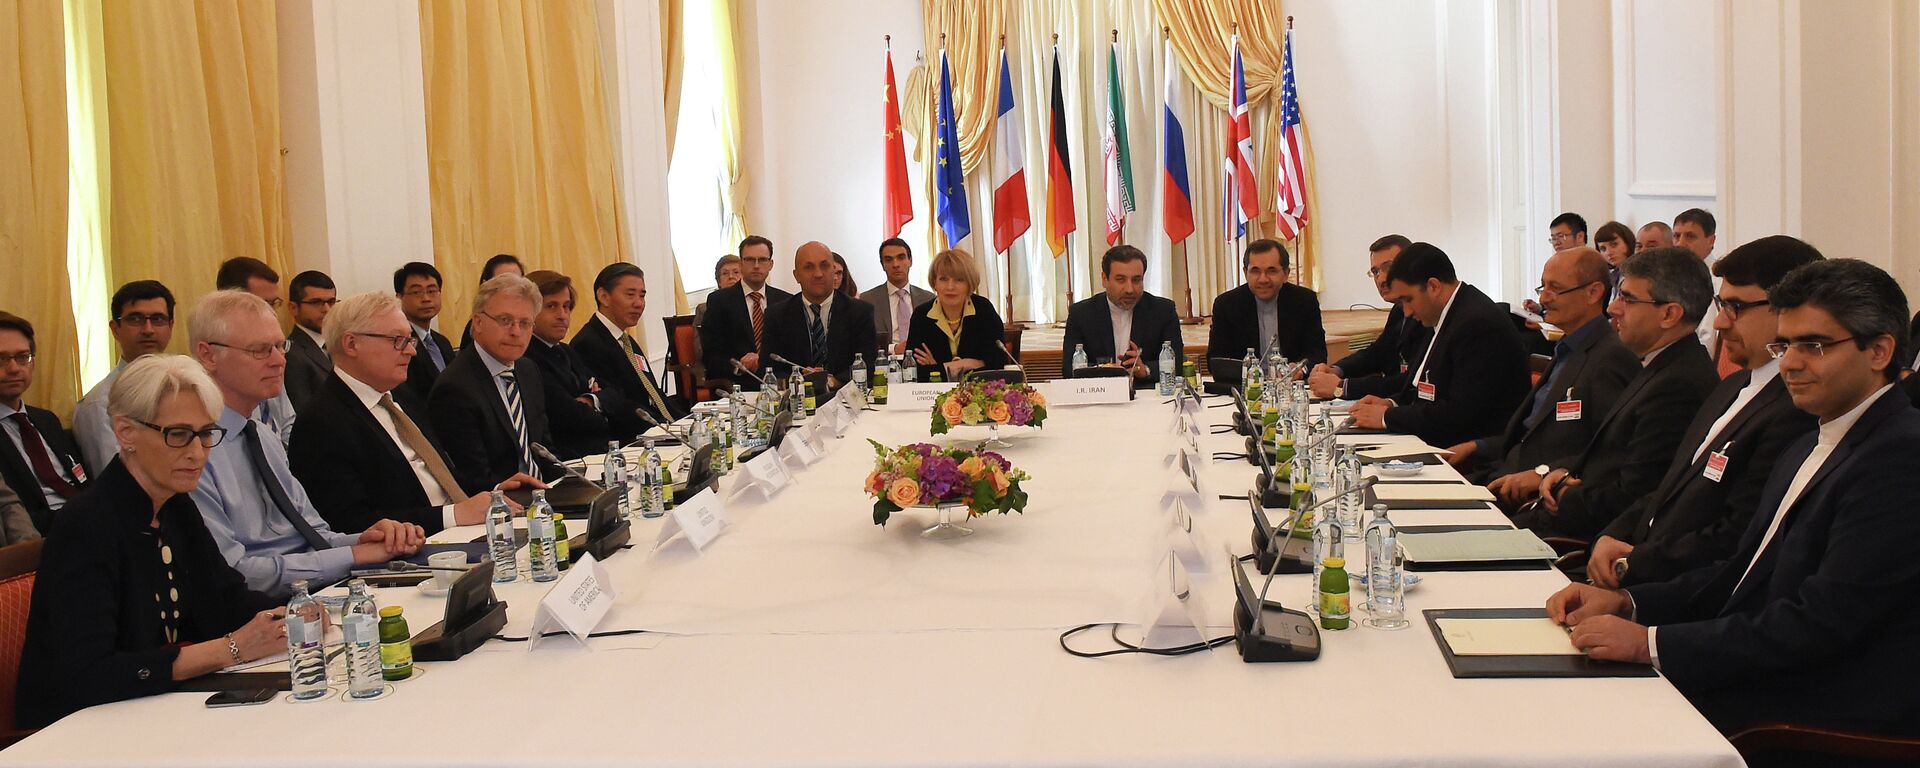 Representantes da União Europeia, EUA, Reino Unido, França, Alemanha, Rússia, China e Irã durante as negociações sobre o acordo nuclear com o Irã, em Viena (foto de arquivo) - Sputnik Brasil, 1920, 06.12.2022